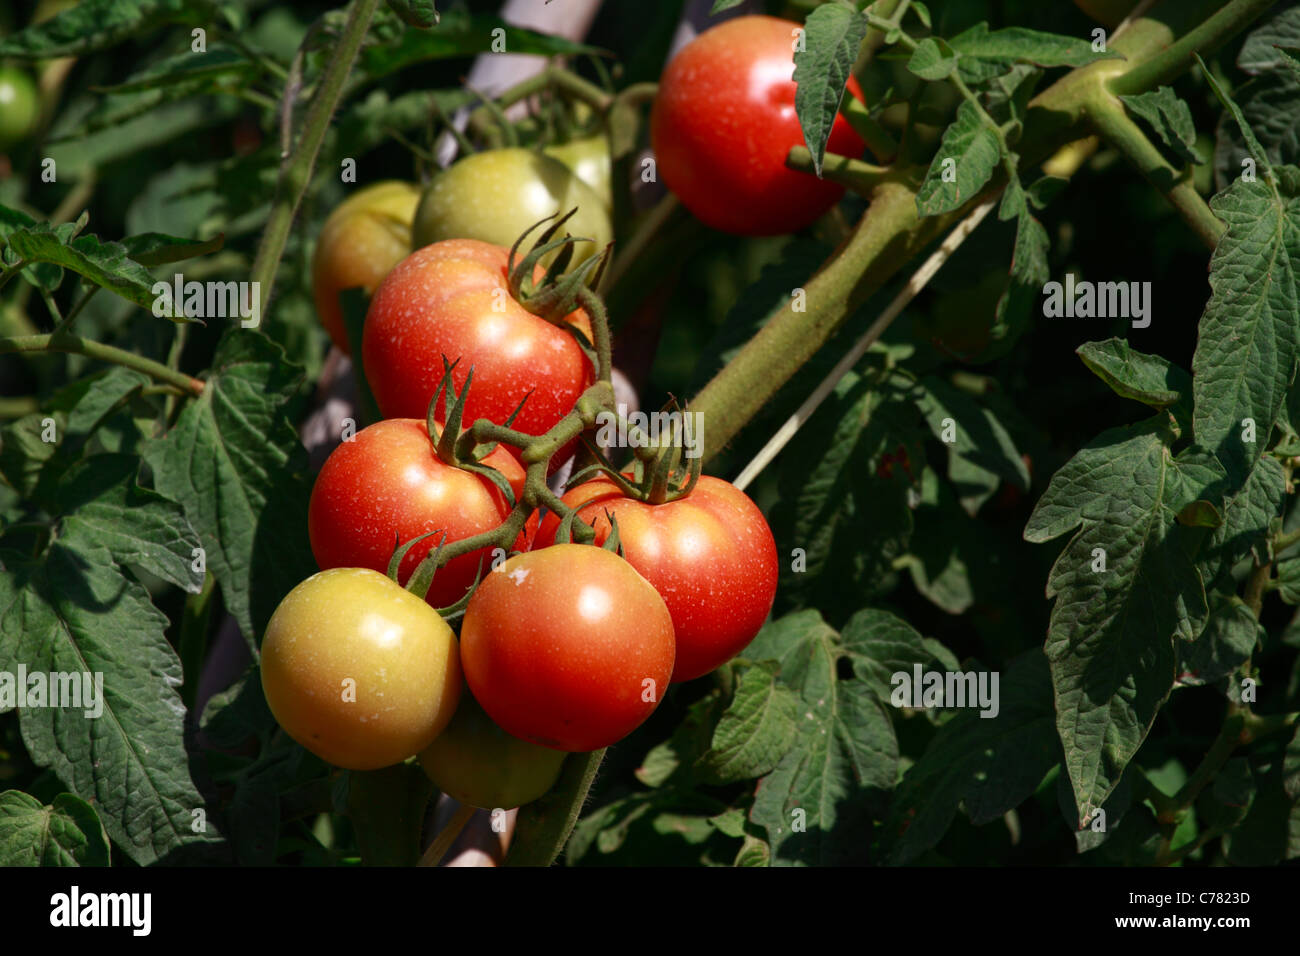 Tomato plantation, detail view Stock Photo